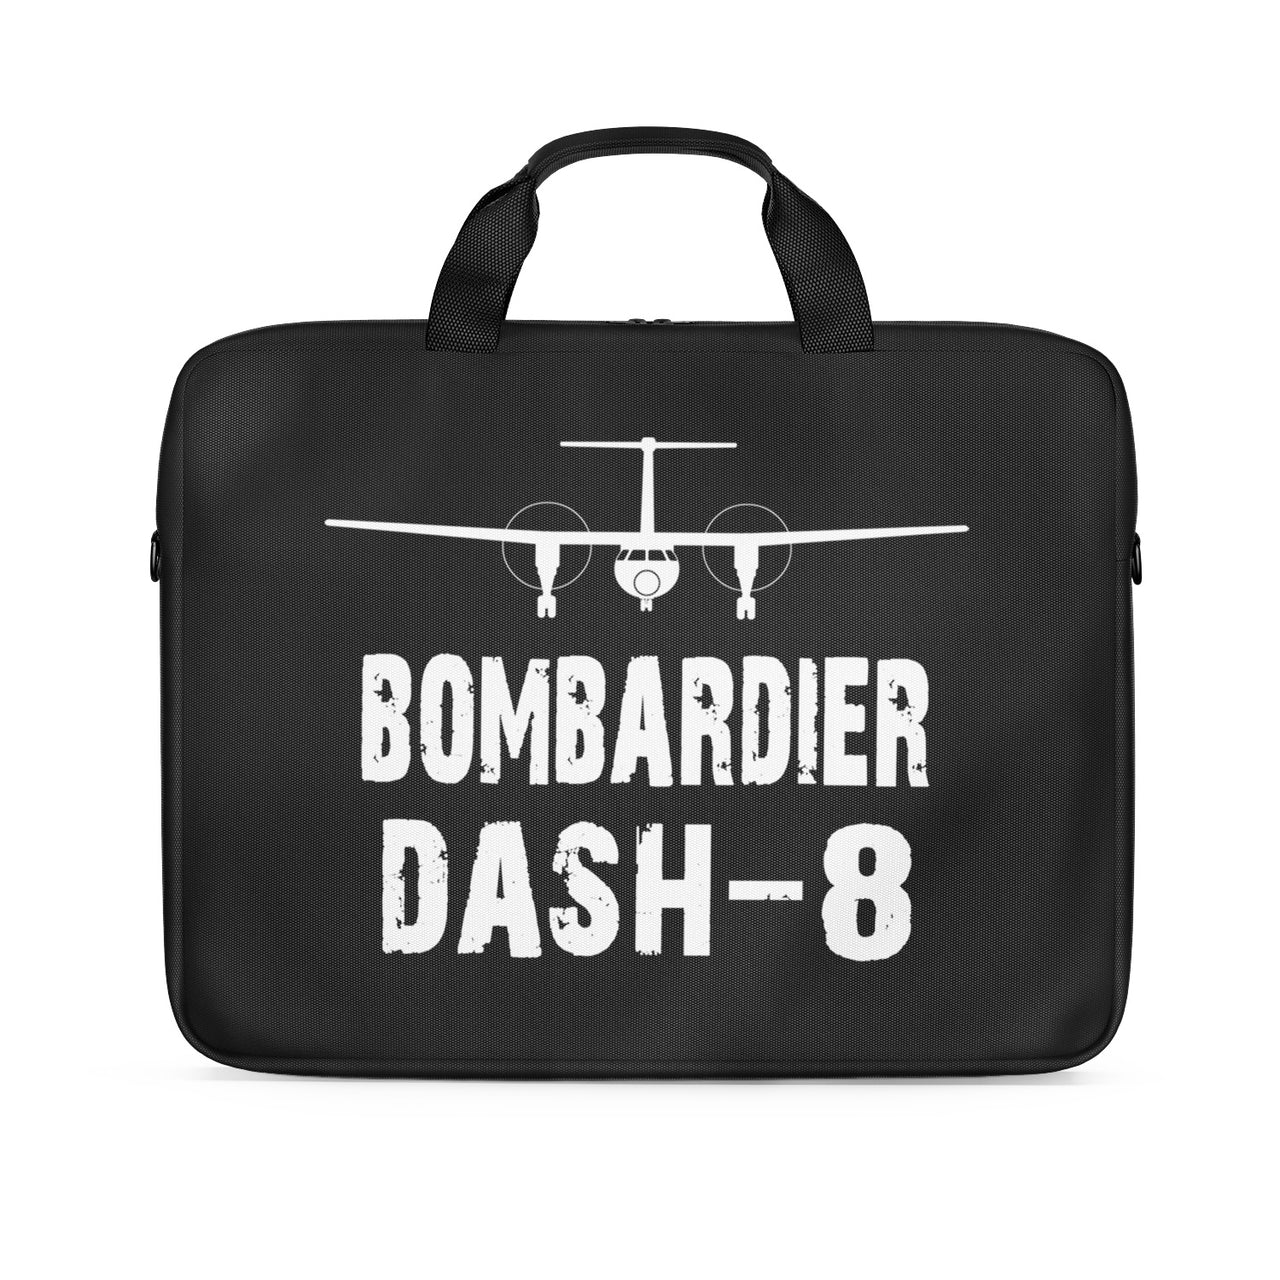 Bombardier Dash-8 & Plane Designed Laptop & Tablet Bags